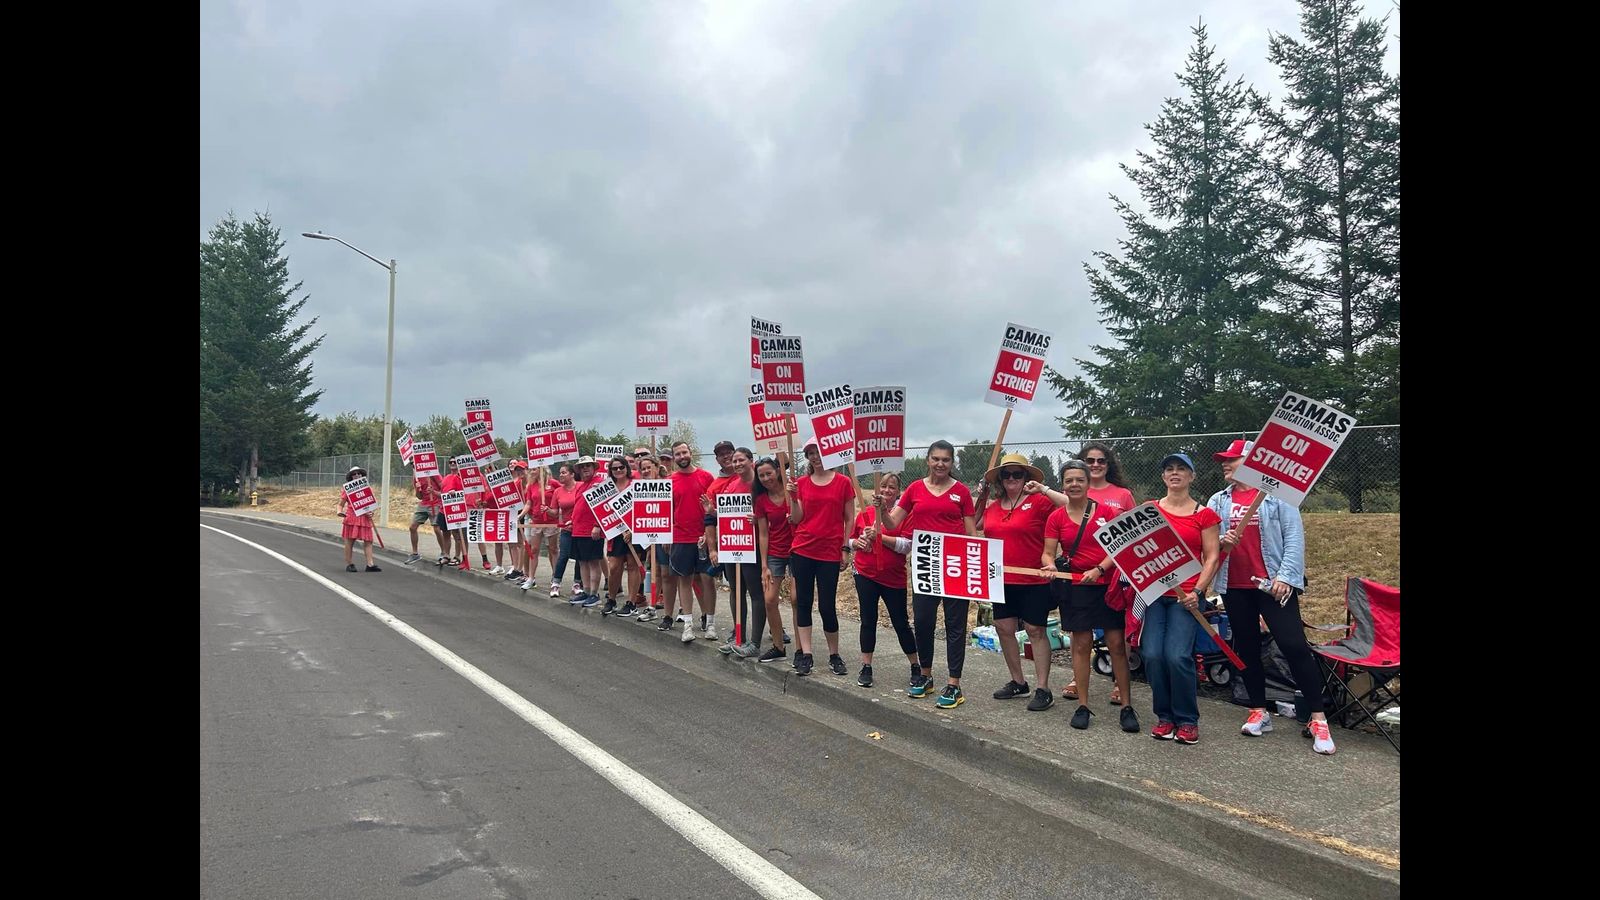 Evergreen-Lehrer im US-Bundesstaat Washington setzen den Streik fort, während die Camas Education Association durch eine kurzfristige Vereinbarung die Umzugspläne aufteilt